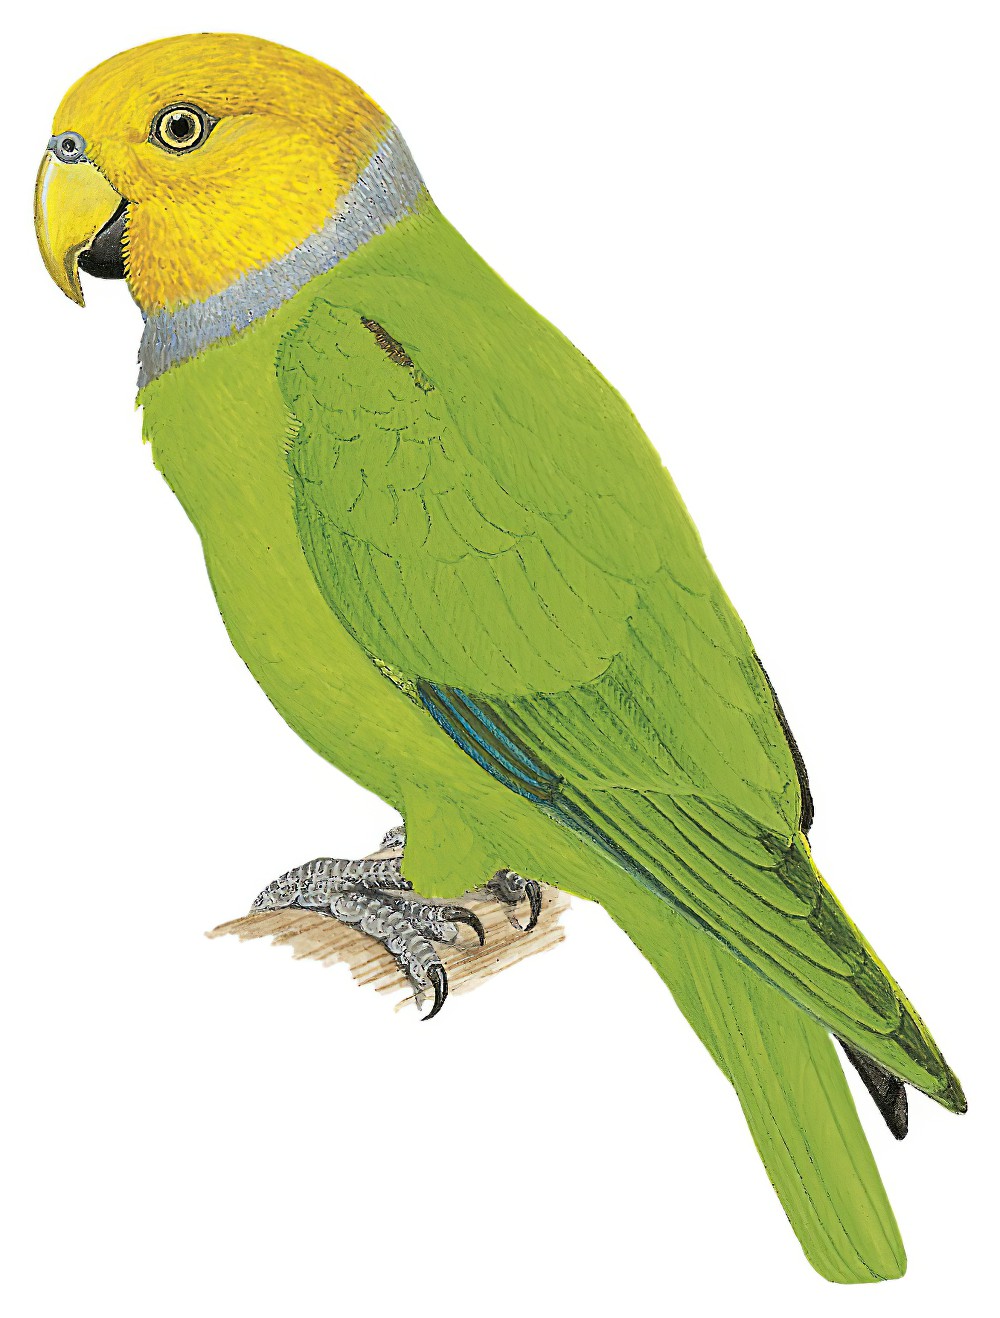 Singing Parrot / Geoffroyus heteroclitus